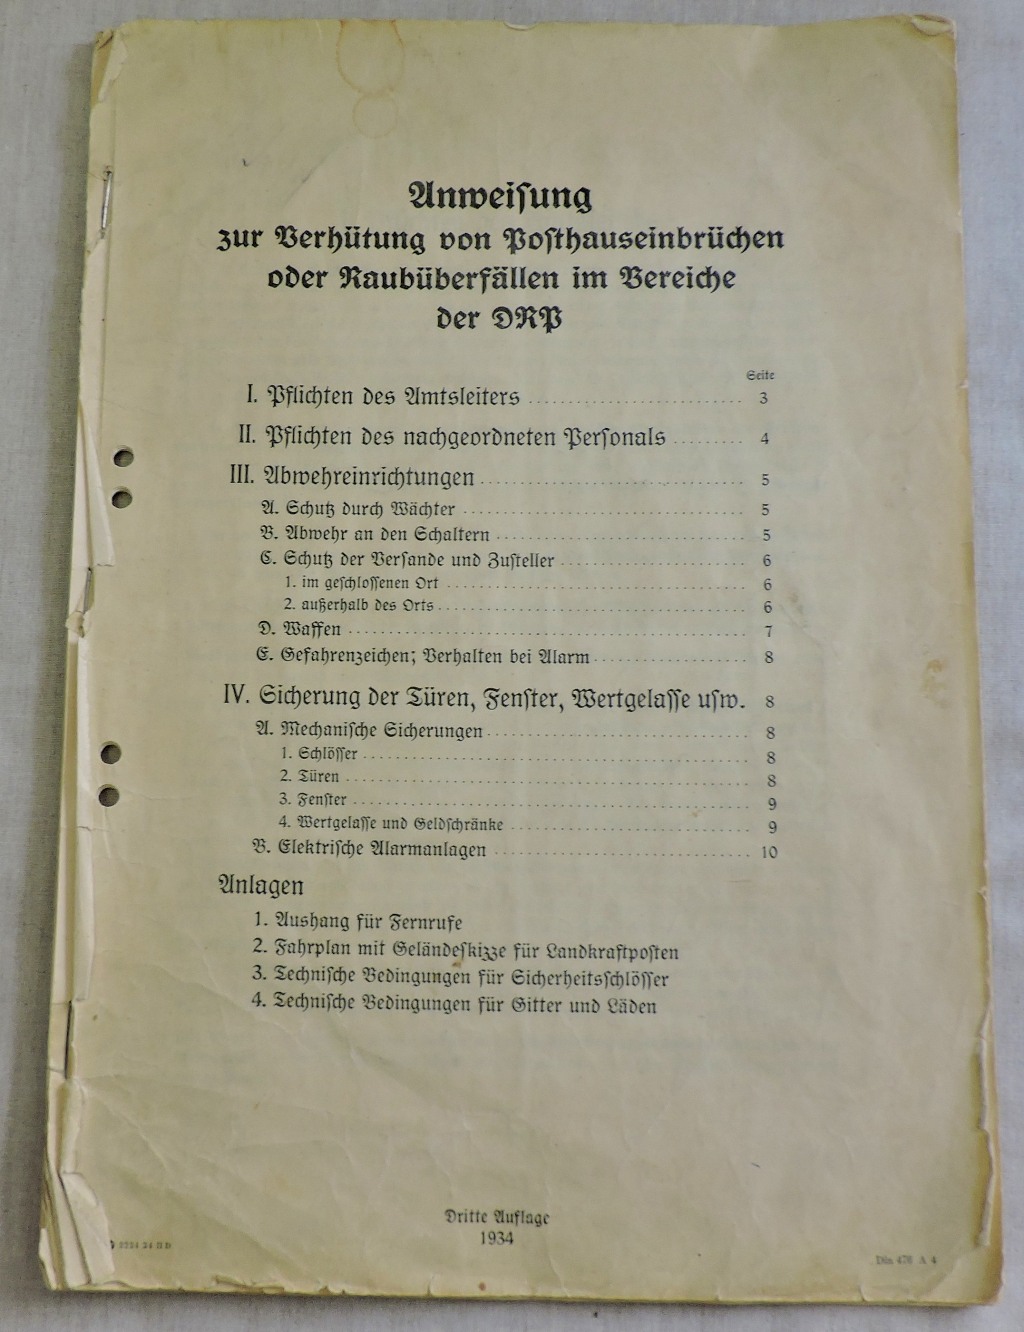 German 1930 DRP Post-House Security Manual "Unweifung zur berhütung von posthauseinbrüchen ober